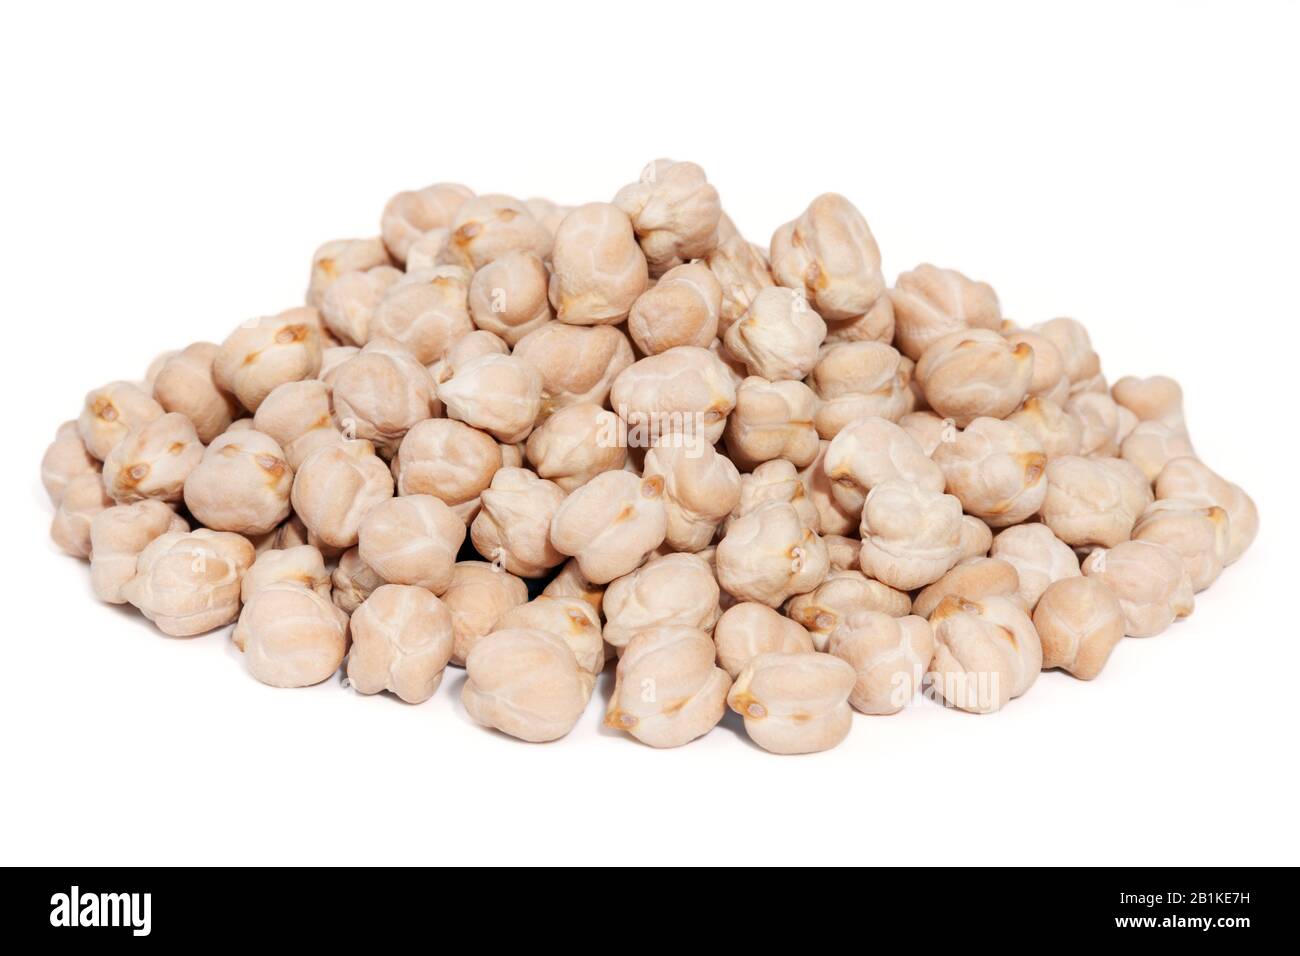 Pieu Des Pois Chiches isolés sur fond blanc. Aussi appelé Garbanzo Bean ou Ceci Bean. Originaire du Moyen-Orient, saveur douce et douce Banque D'Images